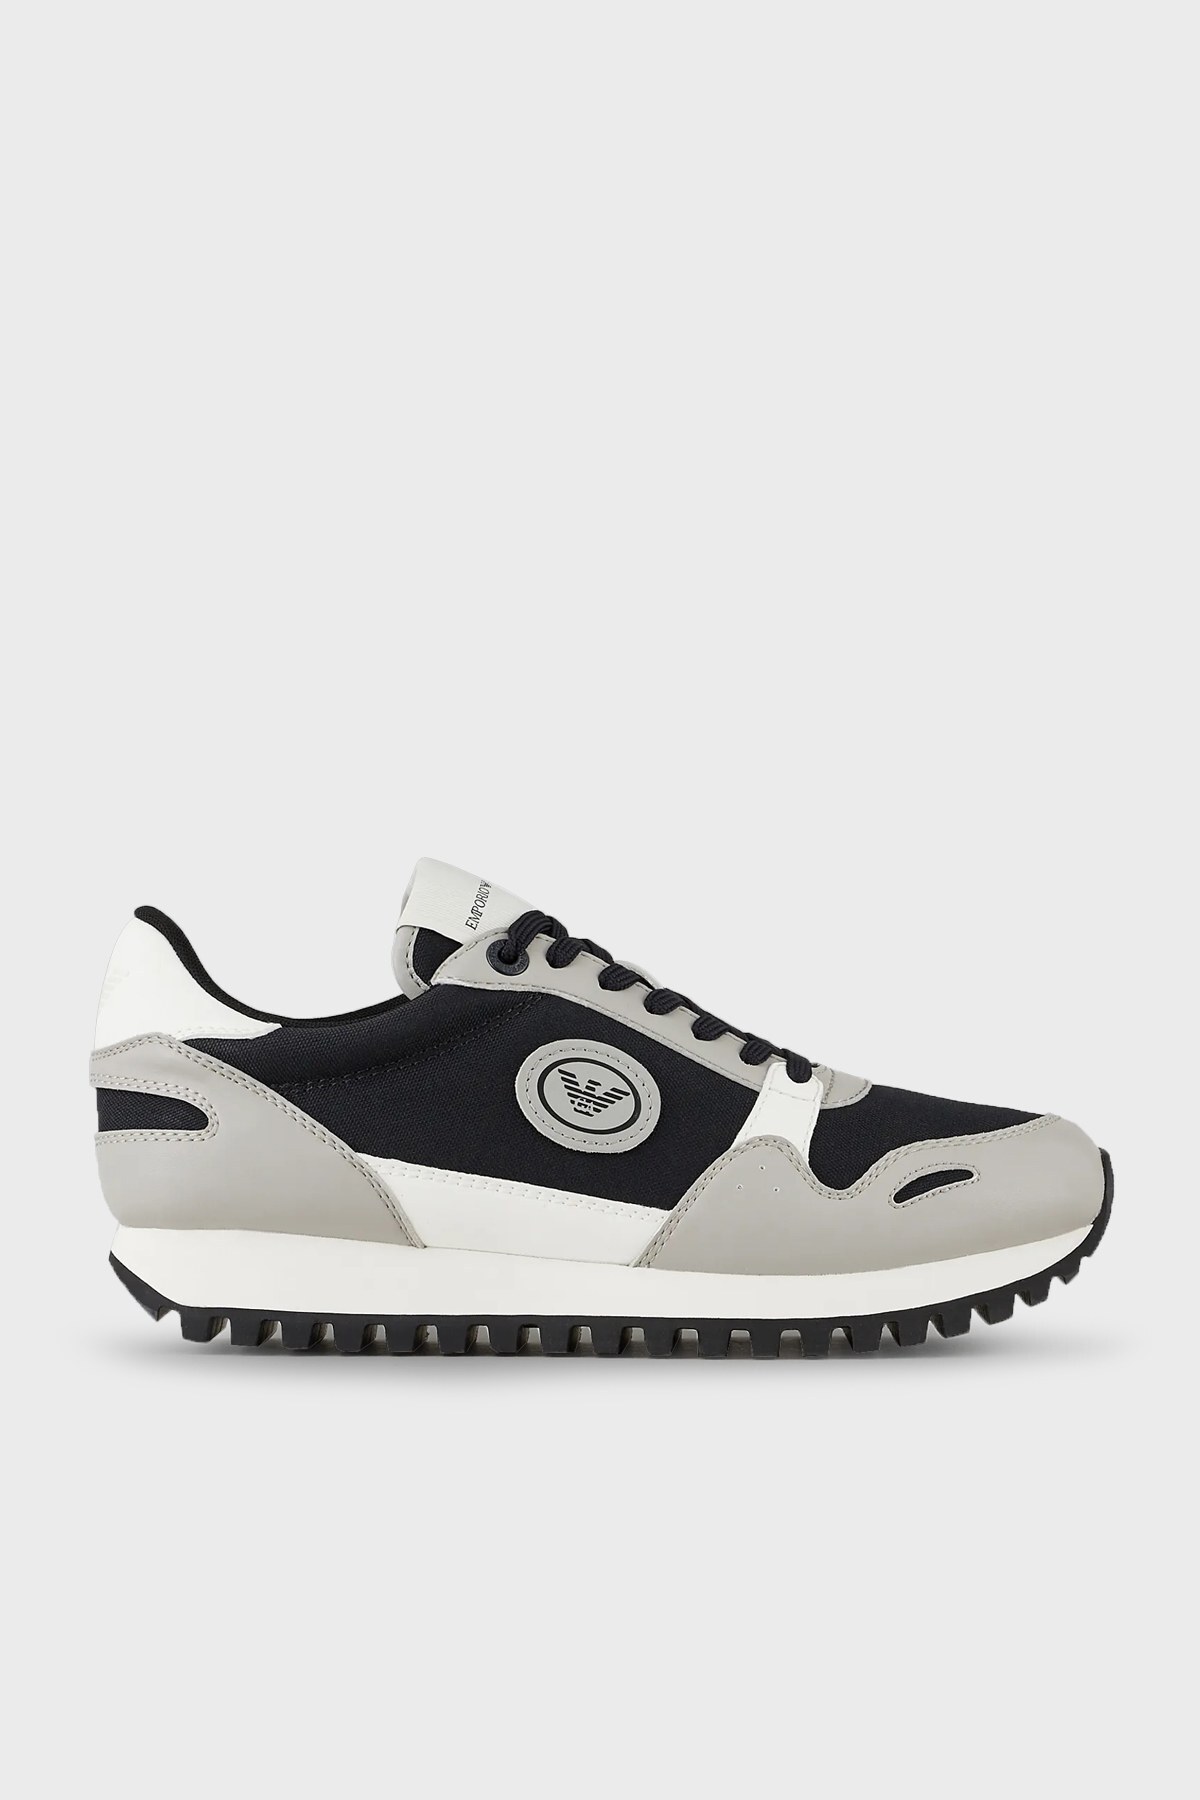 Emporio Armani Logolu Bağcıklı Sneaker Erkek Ayakkabı X4X536 XM999 Q471 LACİVERT-GRİ